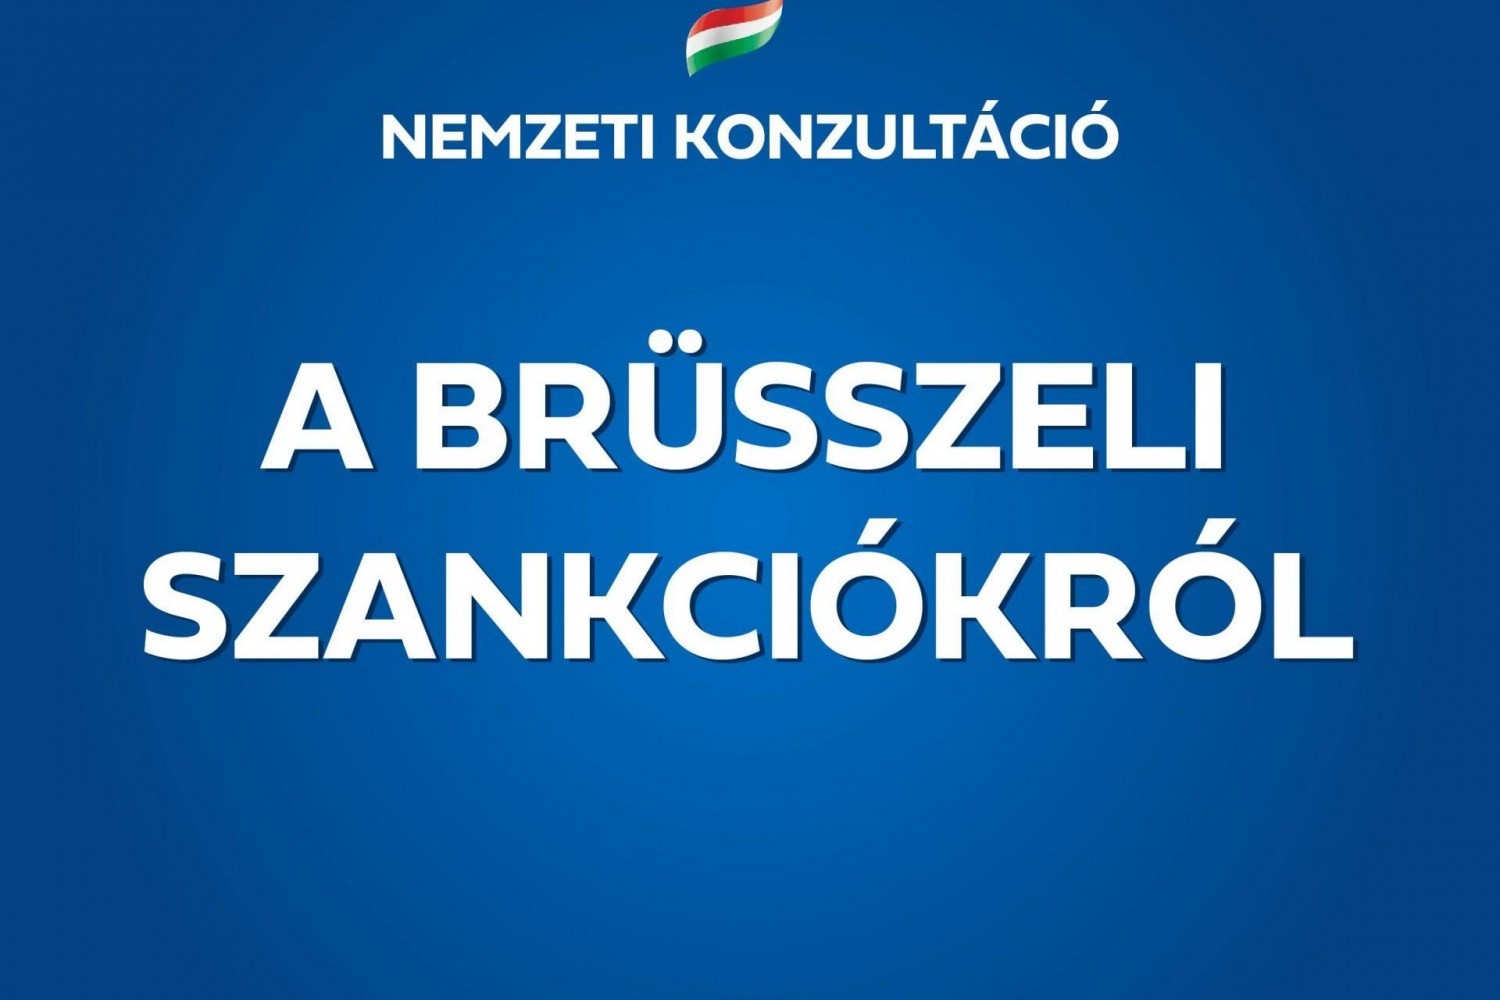 Megvannak a nemzeti konzultáció eredményei: a magyarok 97 százaléka elutasítja a brüsszeli szankciókat